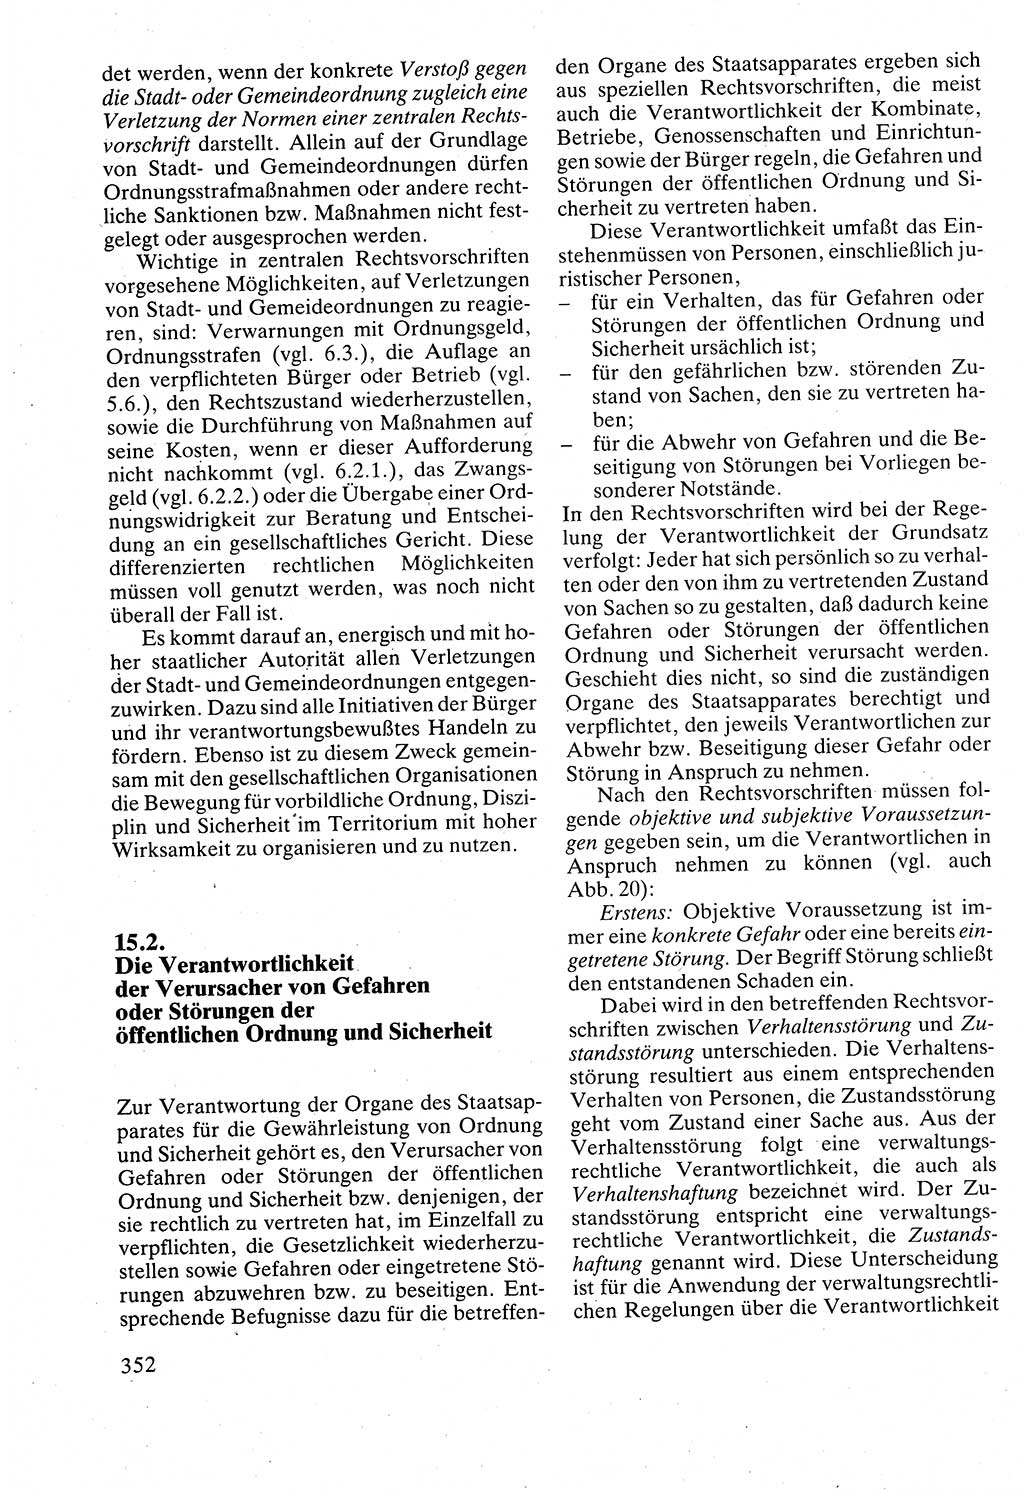 Verwaltungsrecht [Deutsche Demokratische Republik (DDR)], Lehrbuch 1988, Seite 352 (Verw.-R. DDR Lb. 1988, S. 352)